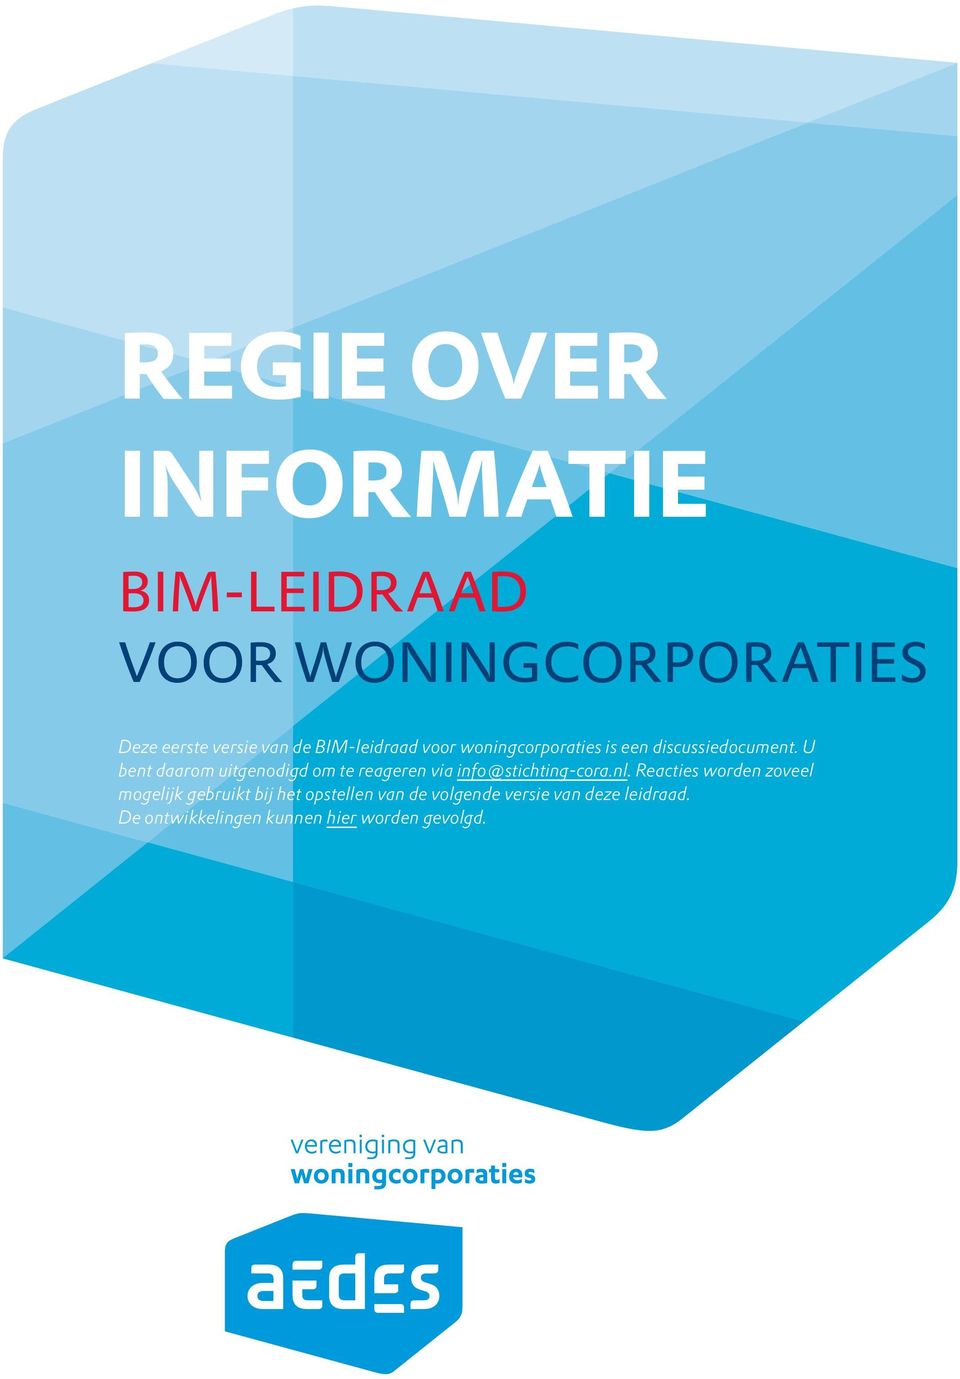 U bent daarom uitgenodigd om te reageren via info@stichting-cora.nl.